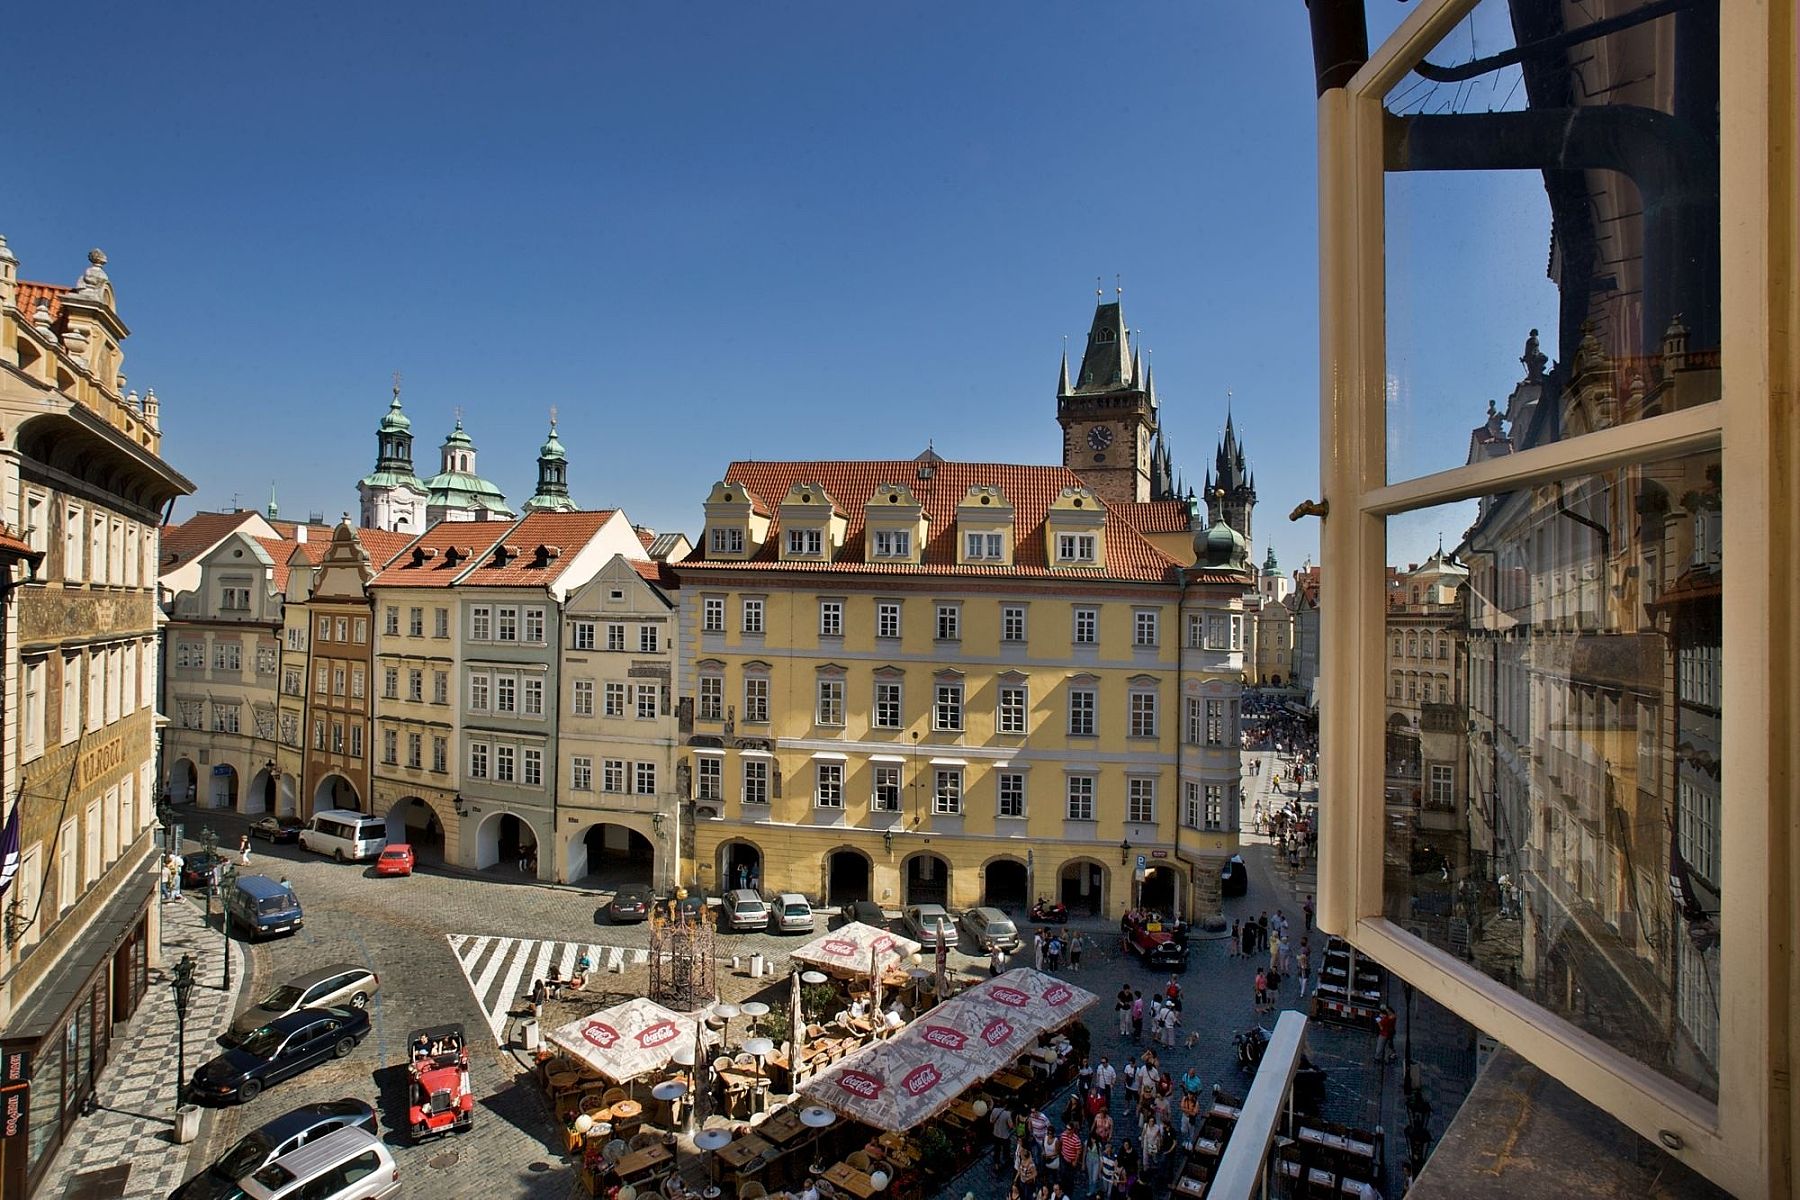 Прага цены